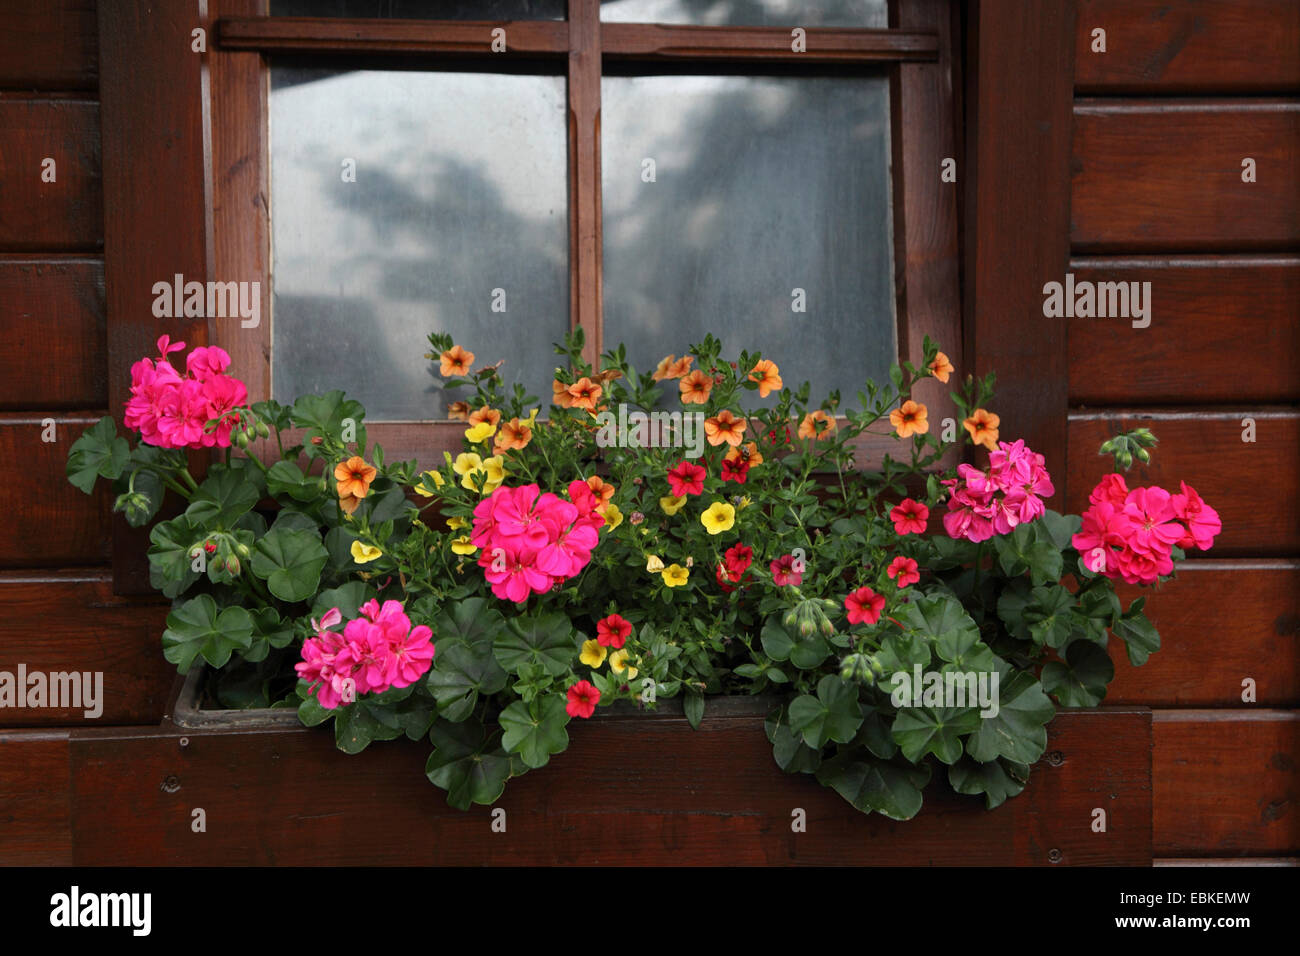 Millionbells (Callibrachoa, Callibrachoa-Hybride, Petunia-Hybride, Petunia), Summer house with flowers Stock Photo